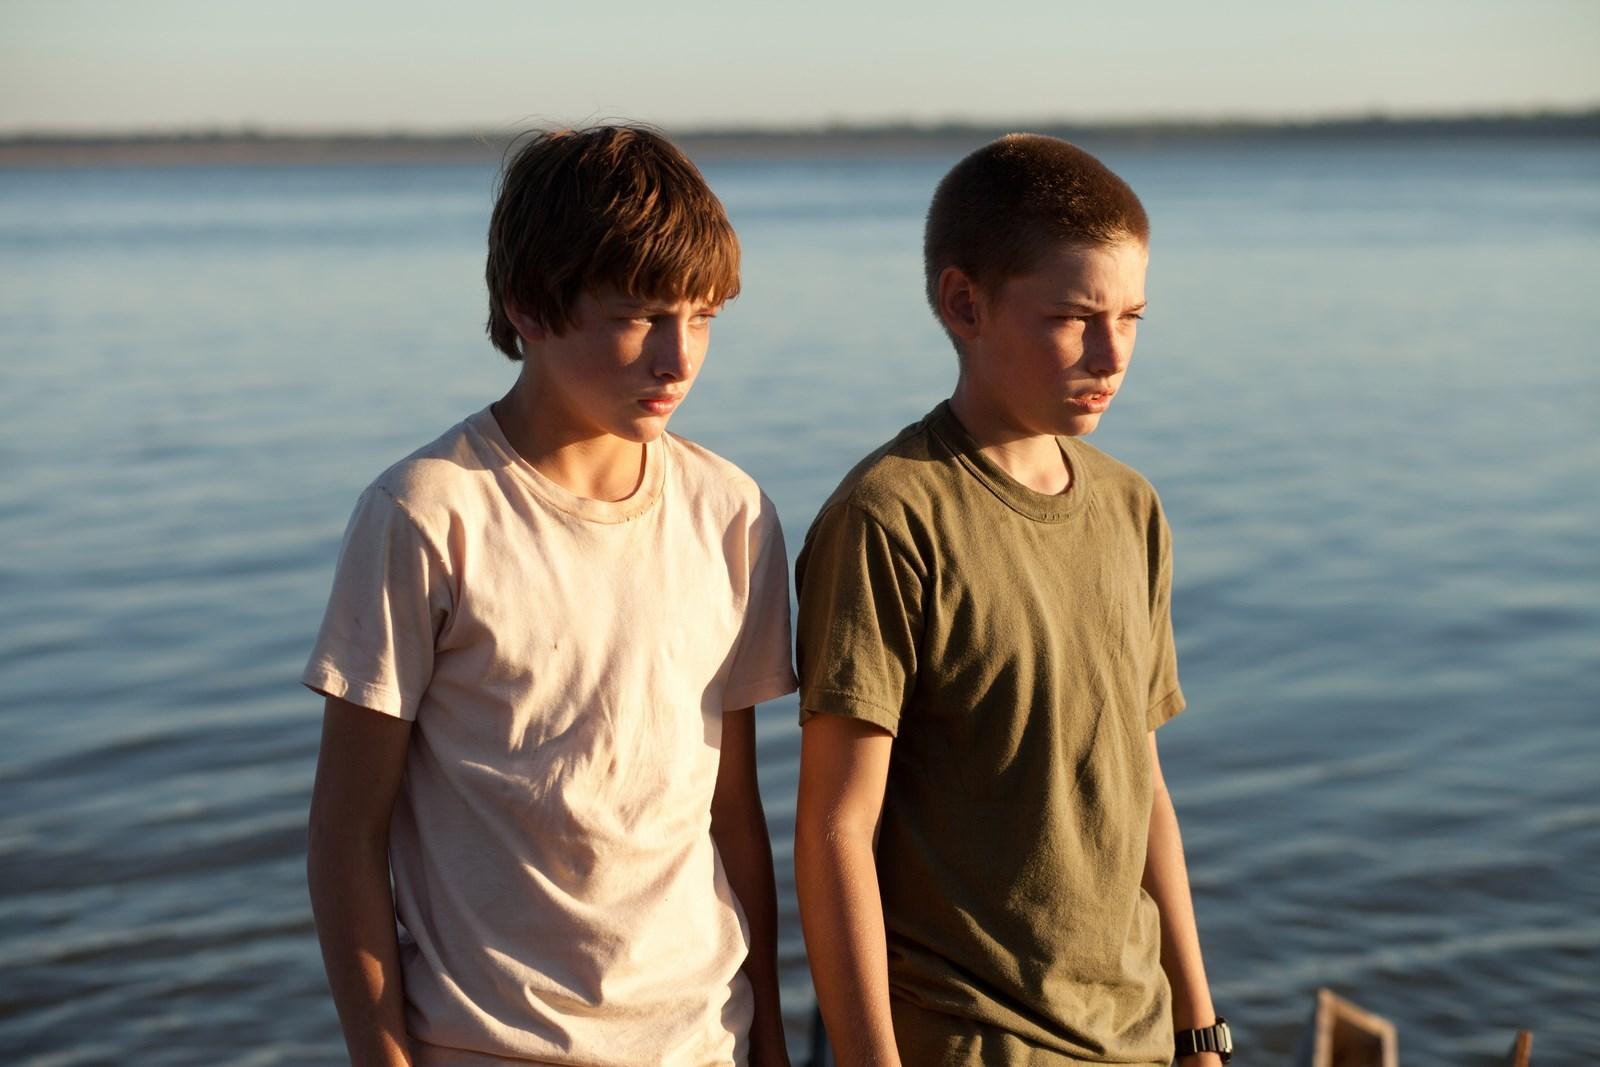 Young boys 2. Джейкоб Лофленд. Северное море, Техас (2011). Два мальчика.